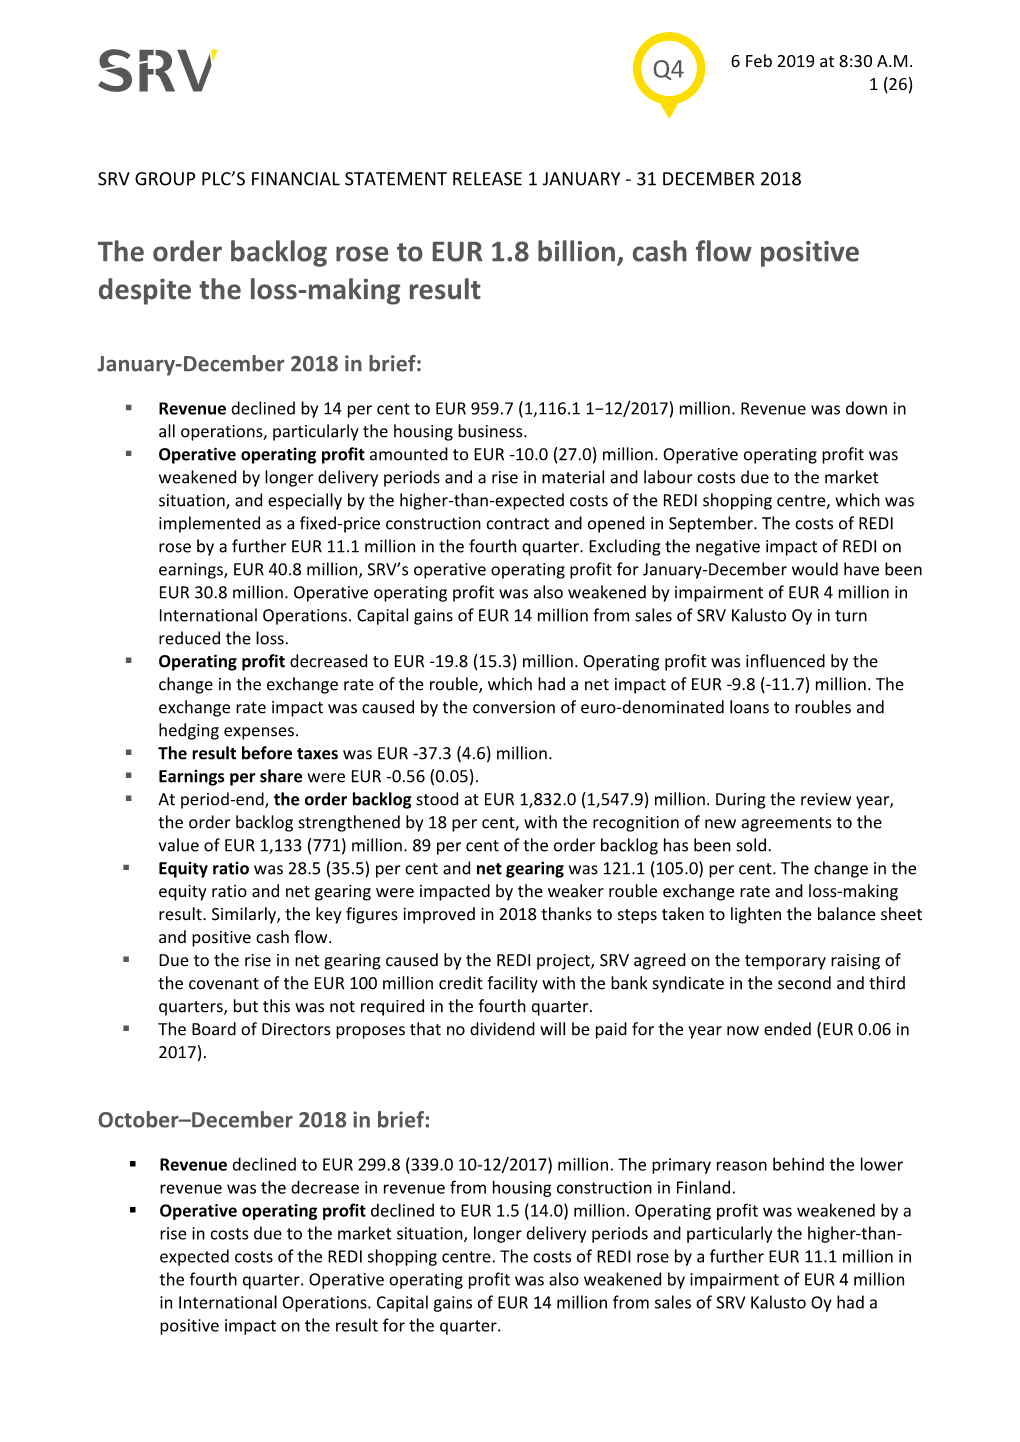 The Order Backlog Rose to EUR 1.8 Billion, Cash Flow Positive Despite the Loss-Making Result